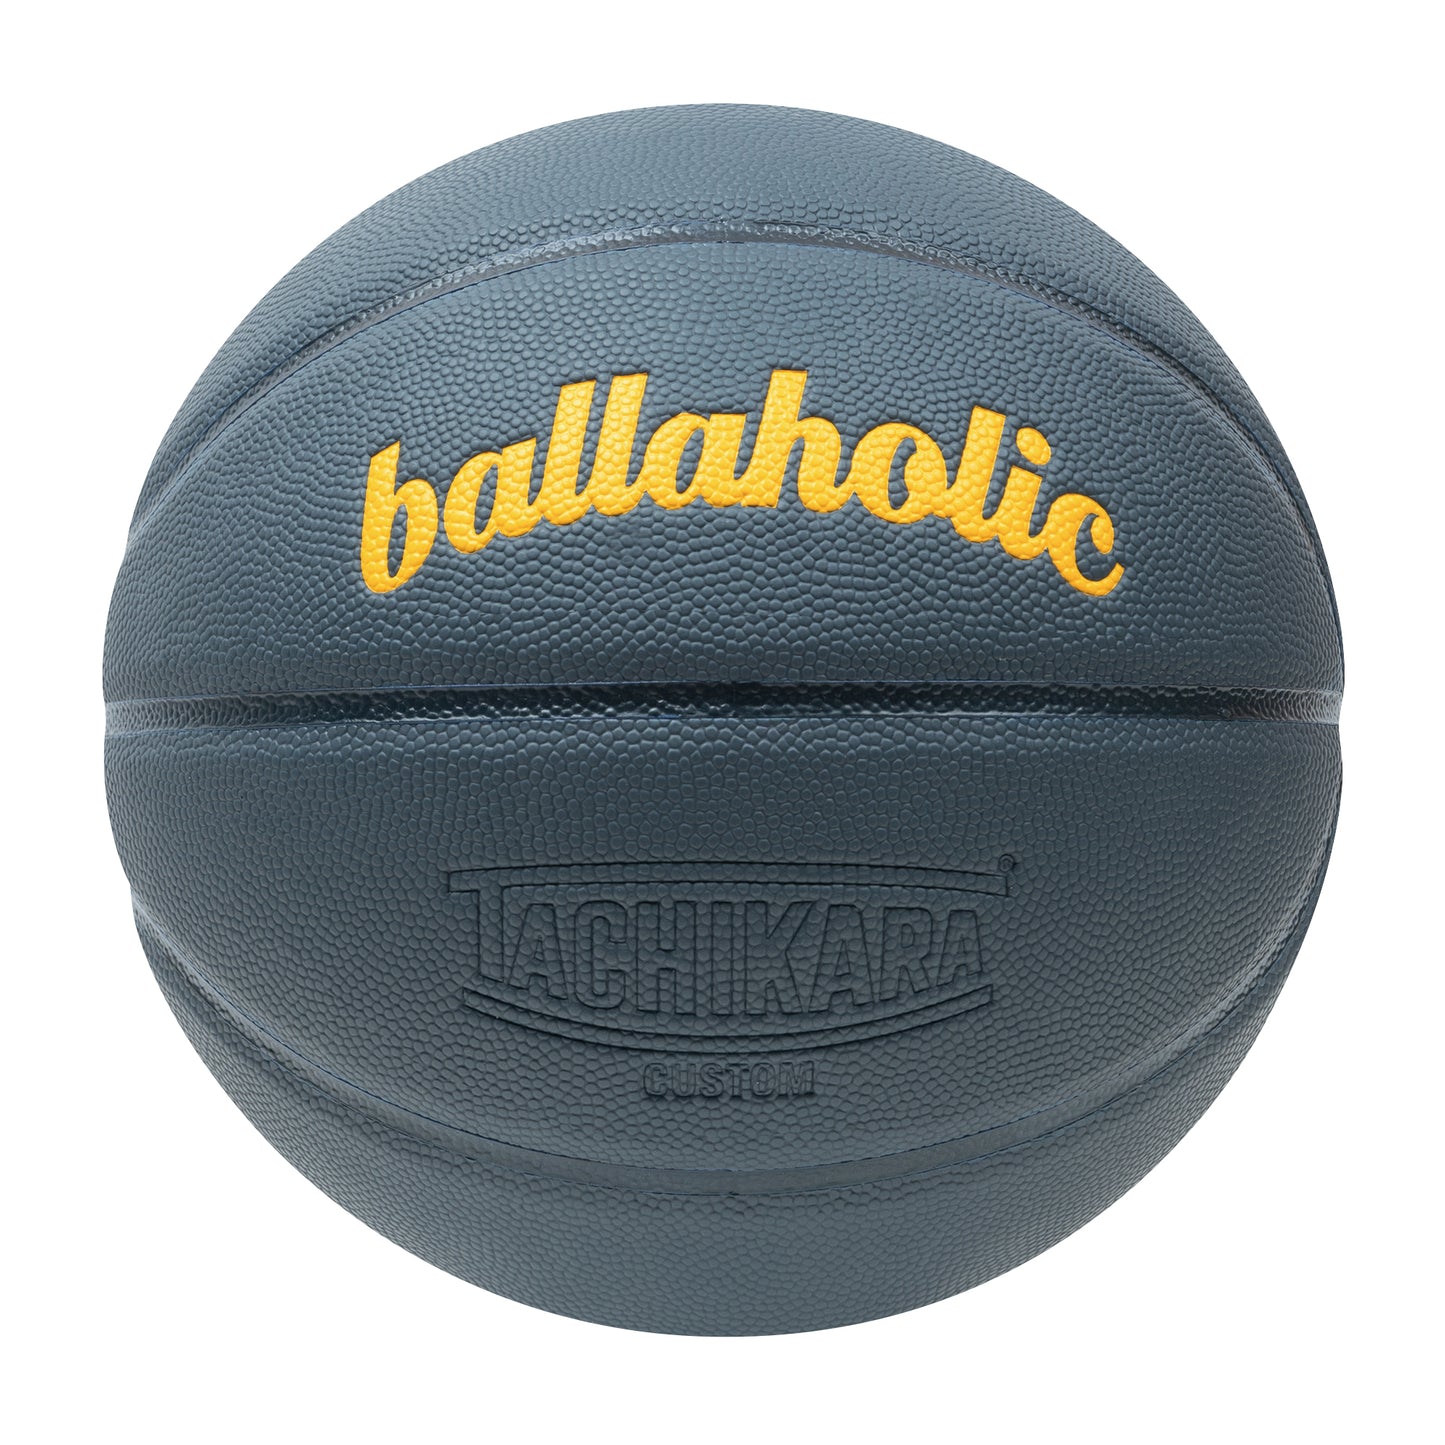 Playground Basketball / ballaholic x TACHIKARA (slate blue/dark navy/yellow) 7